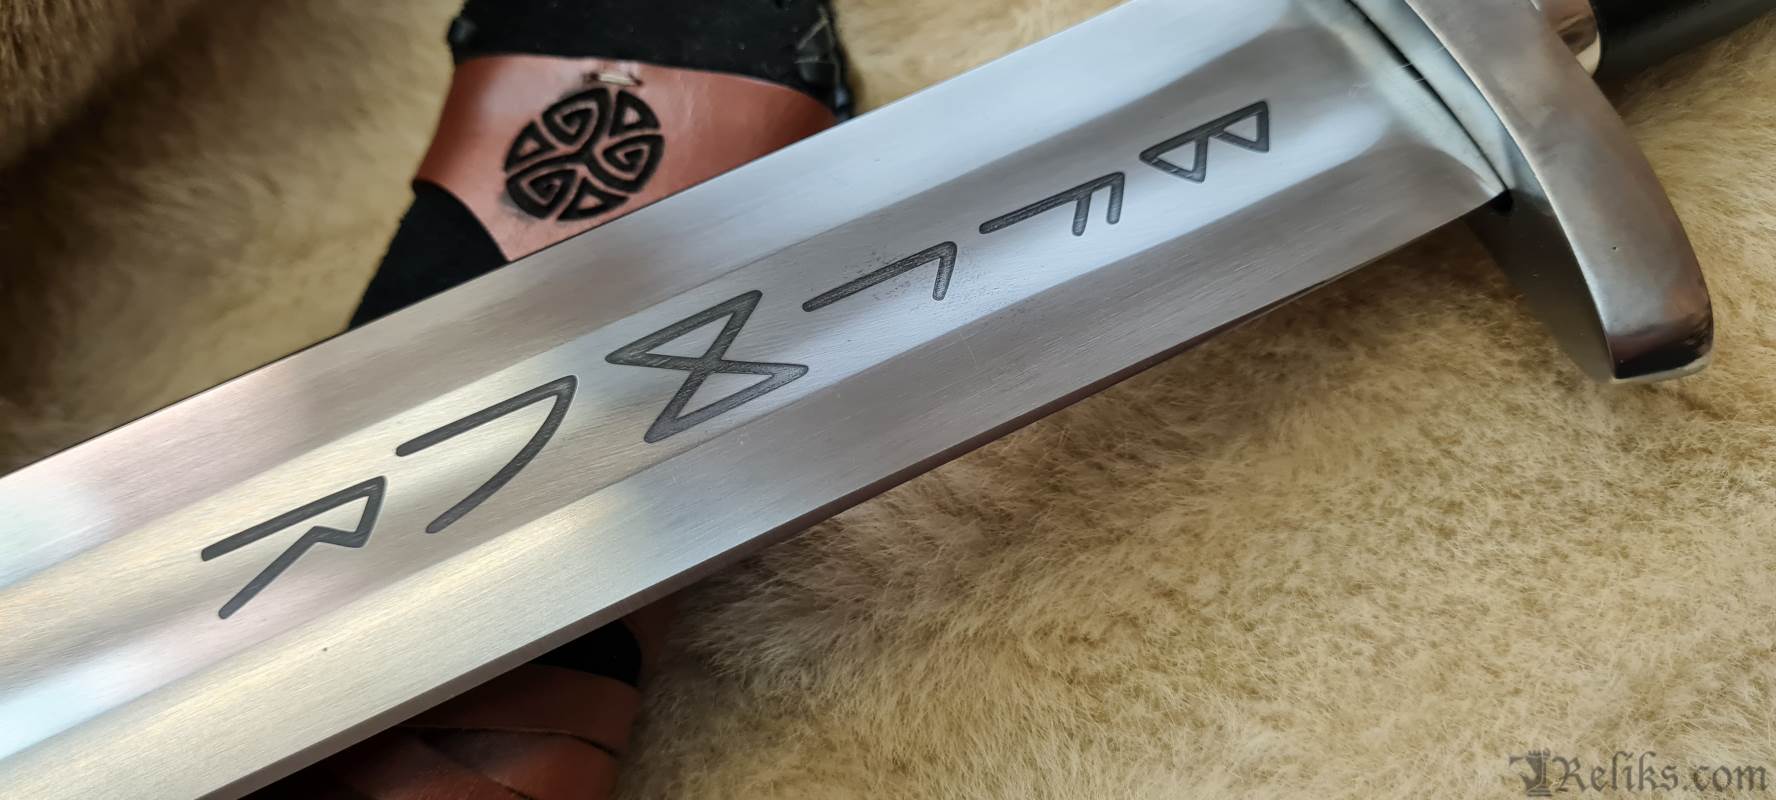 baldur viking blade engravings